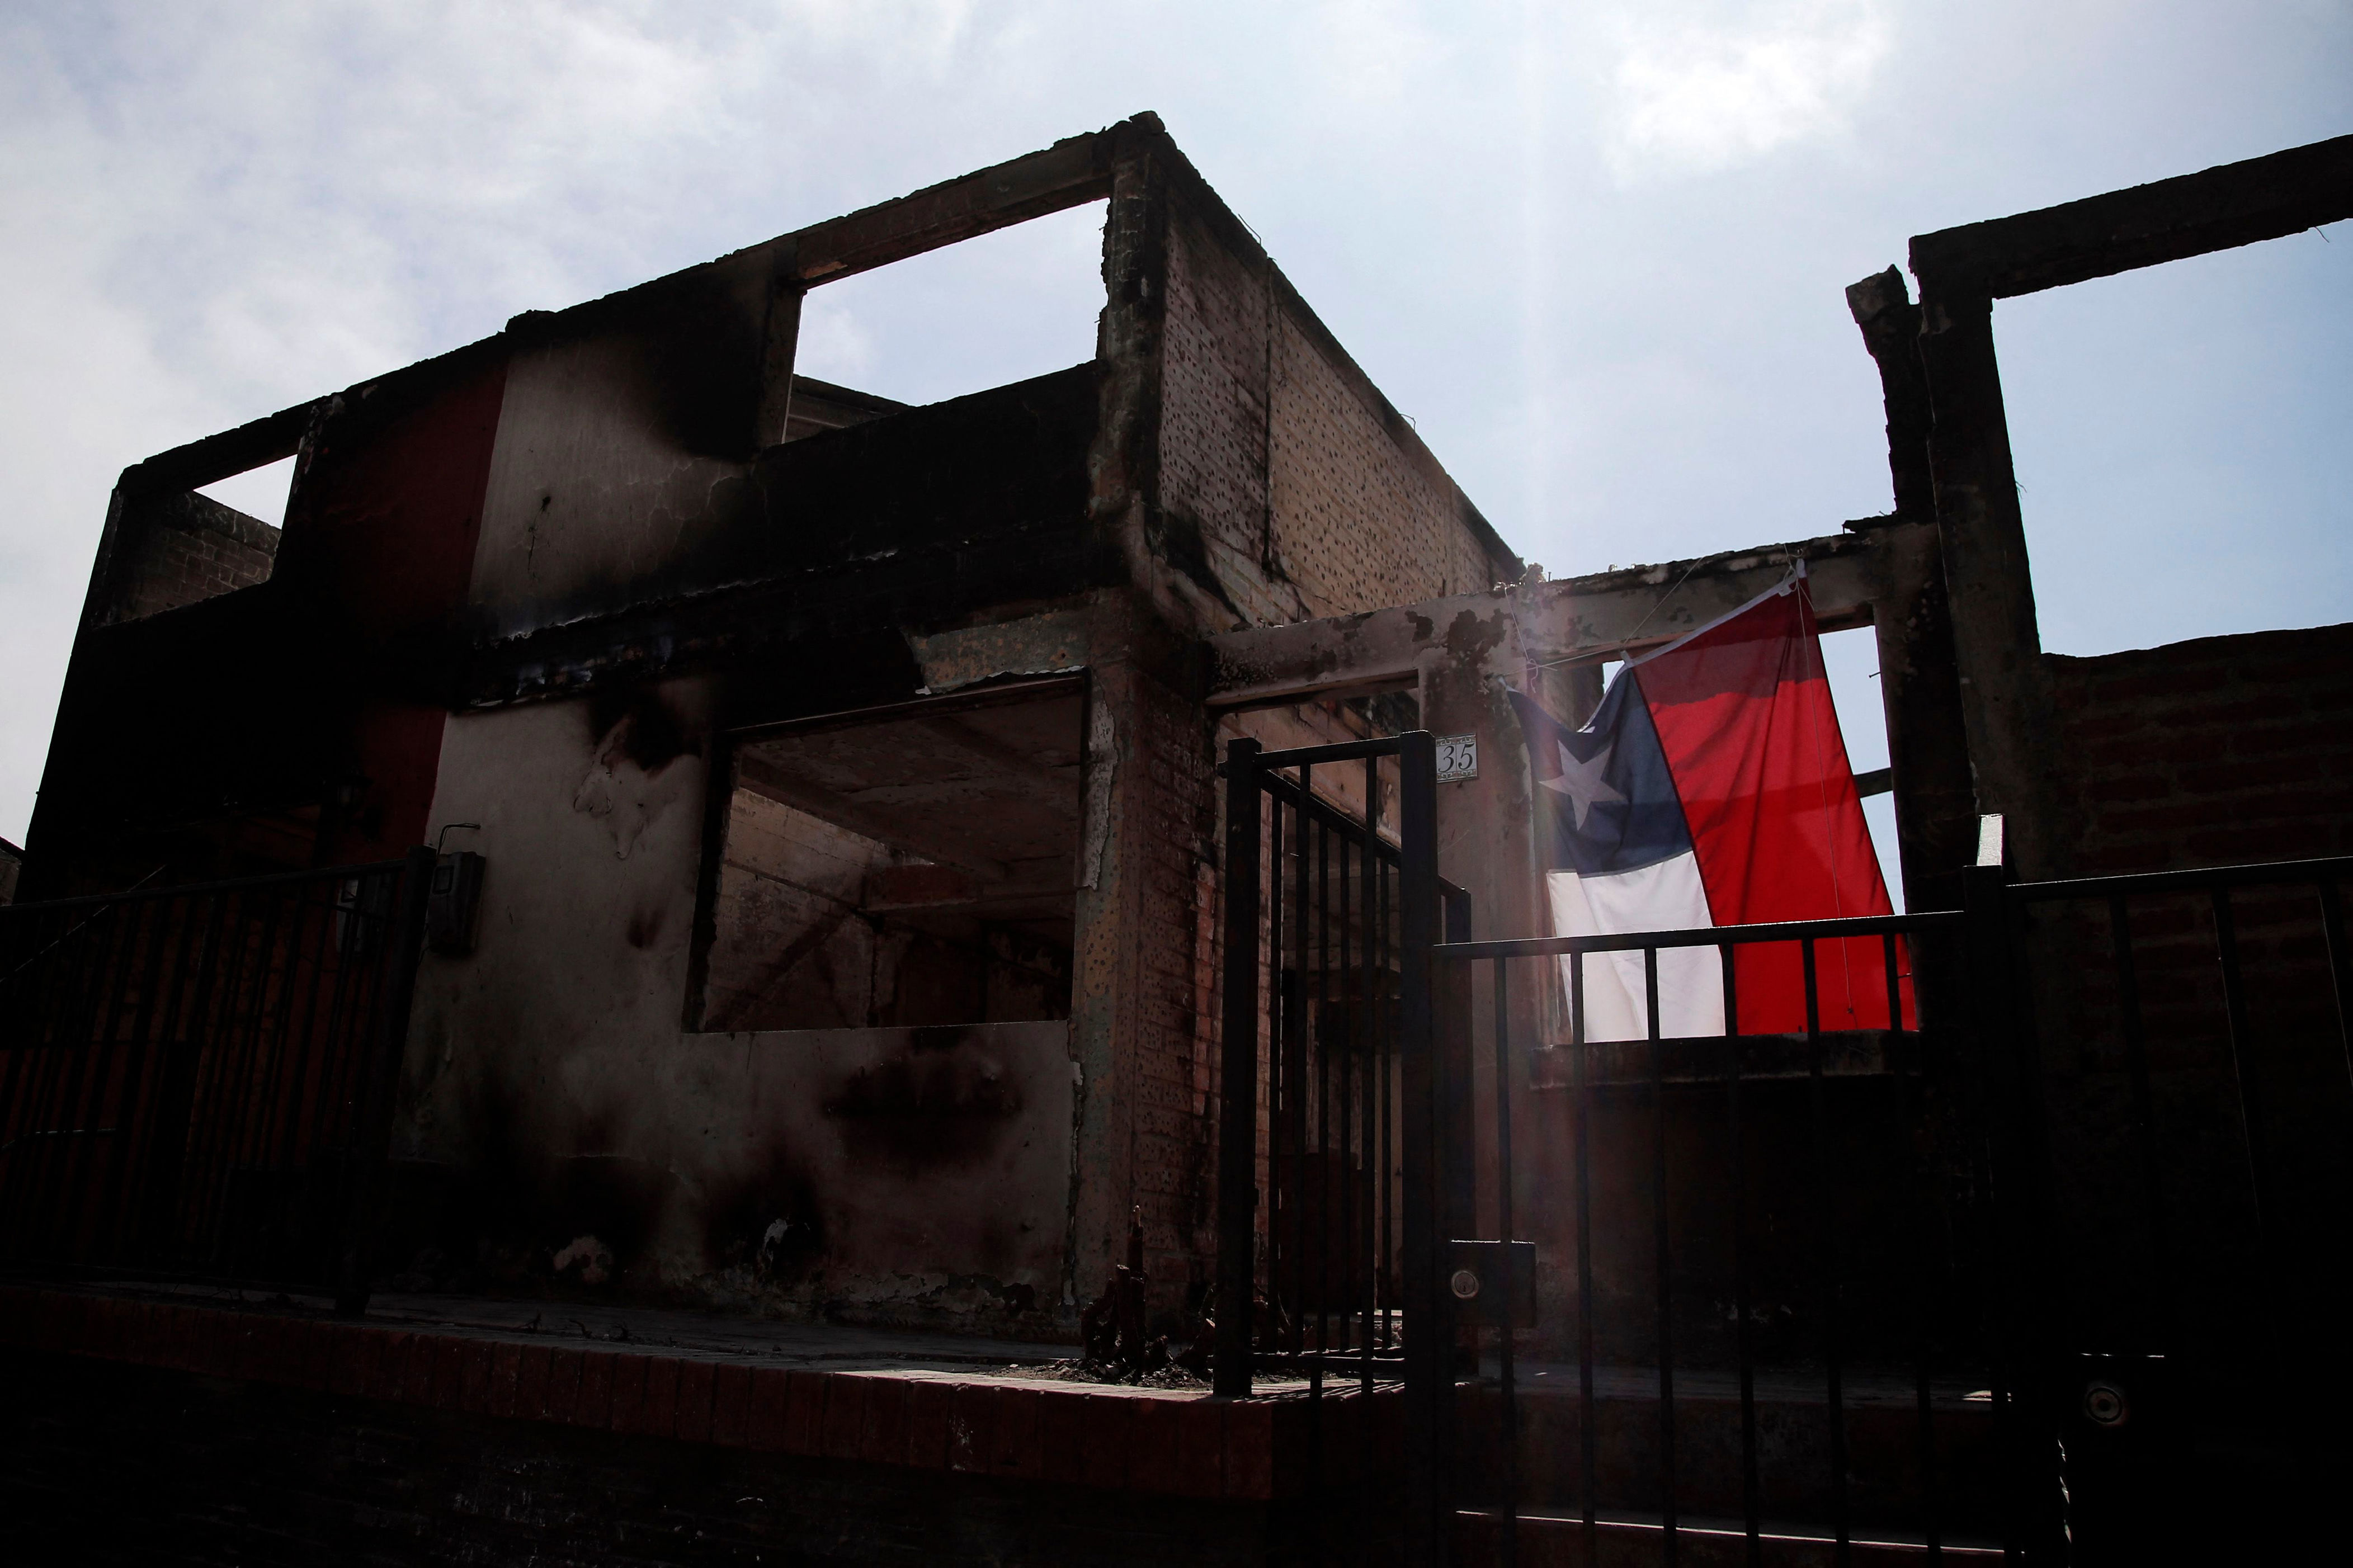 vecinos afectados por incendios en la región de valparaíso acusan intimidación: “nos siguen amenazando que nos van a quemar”